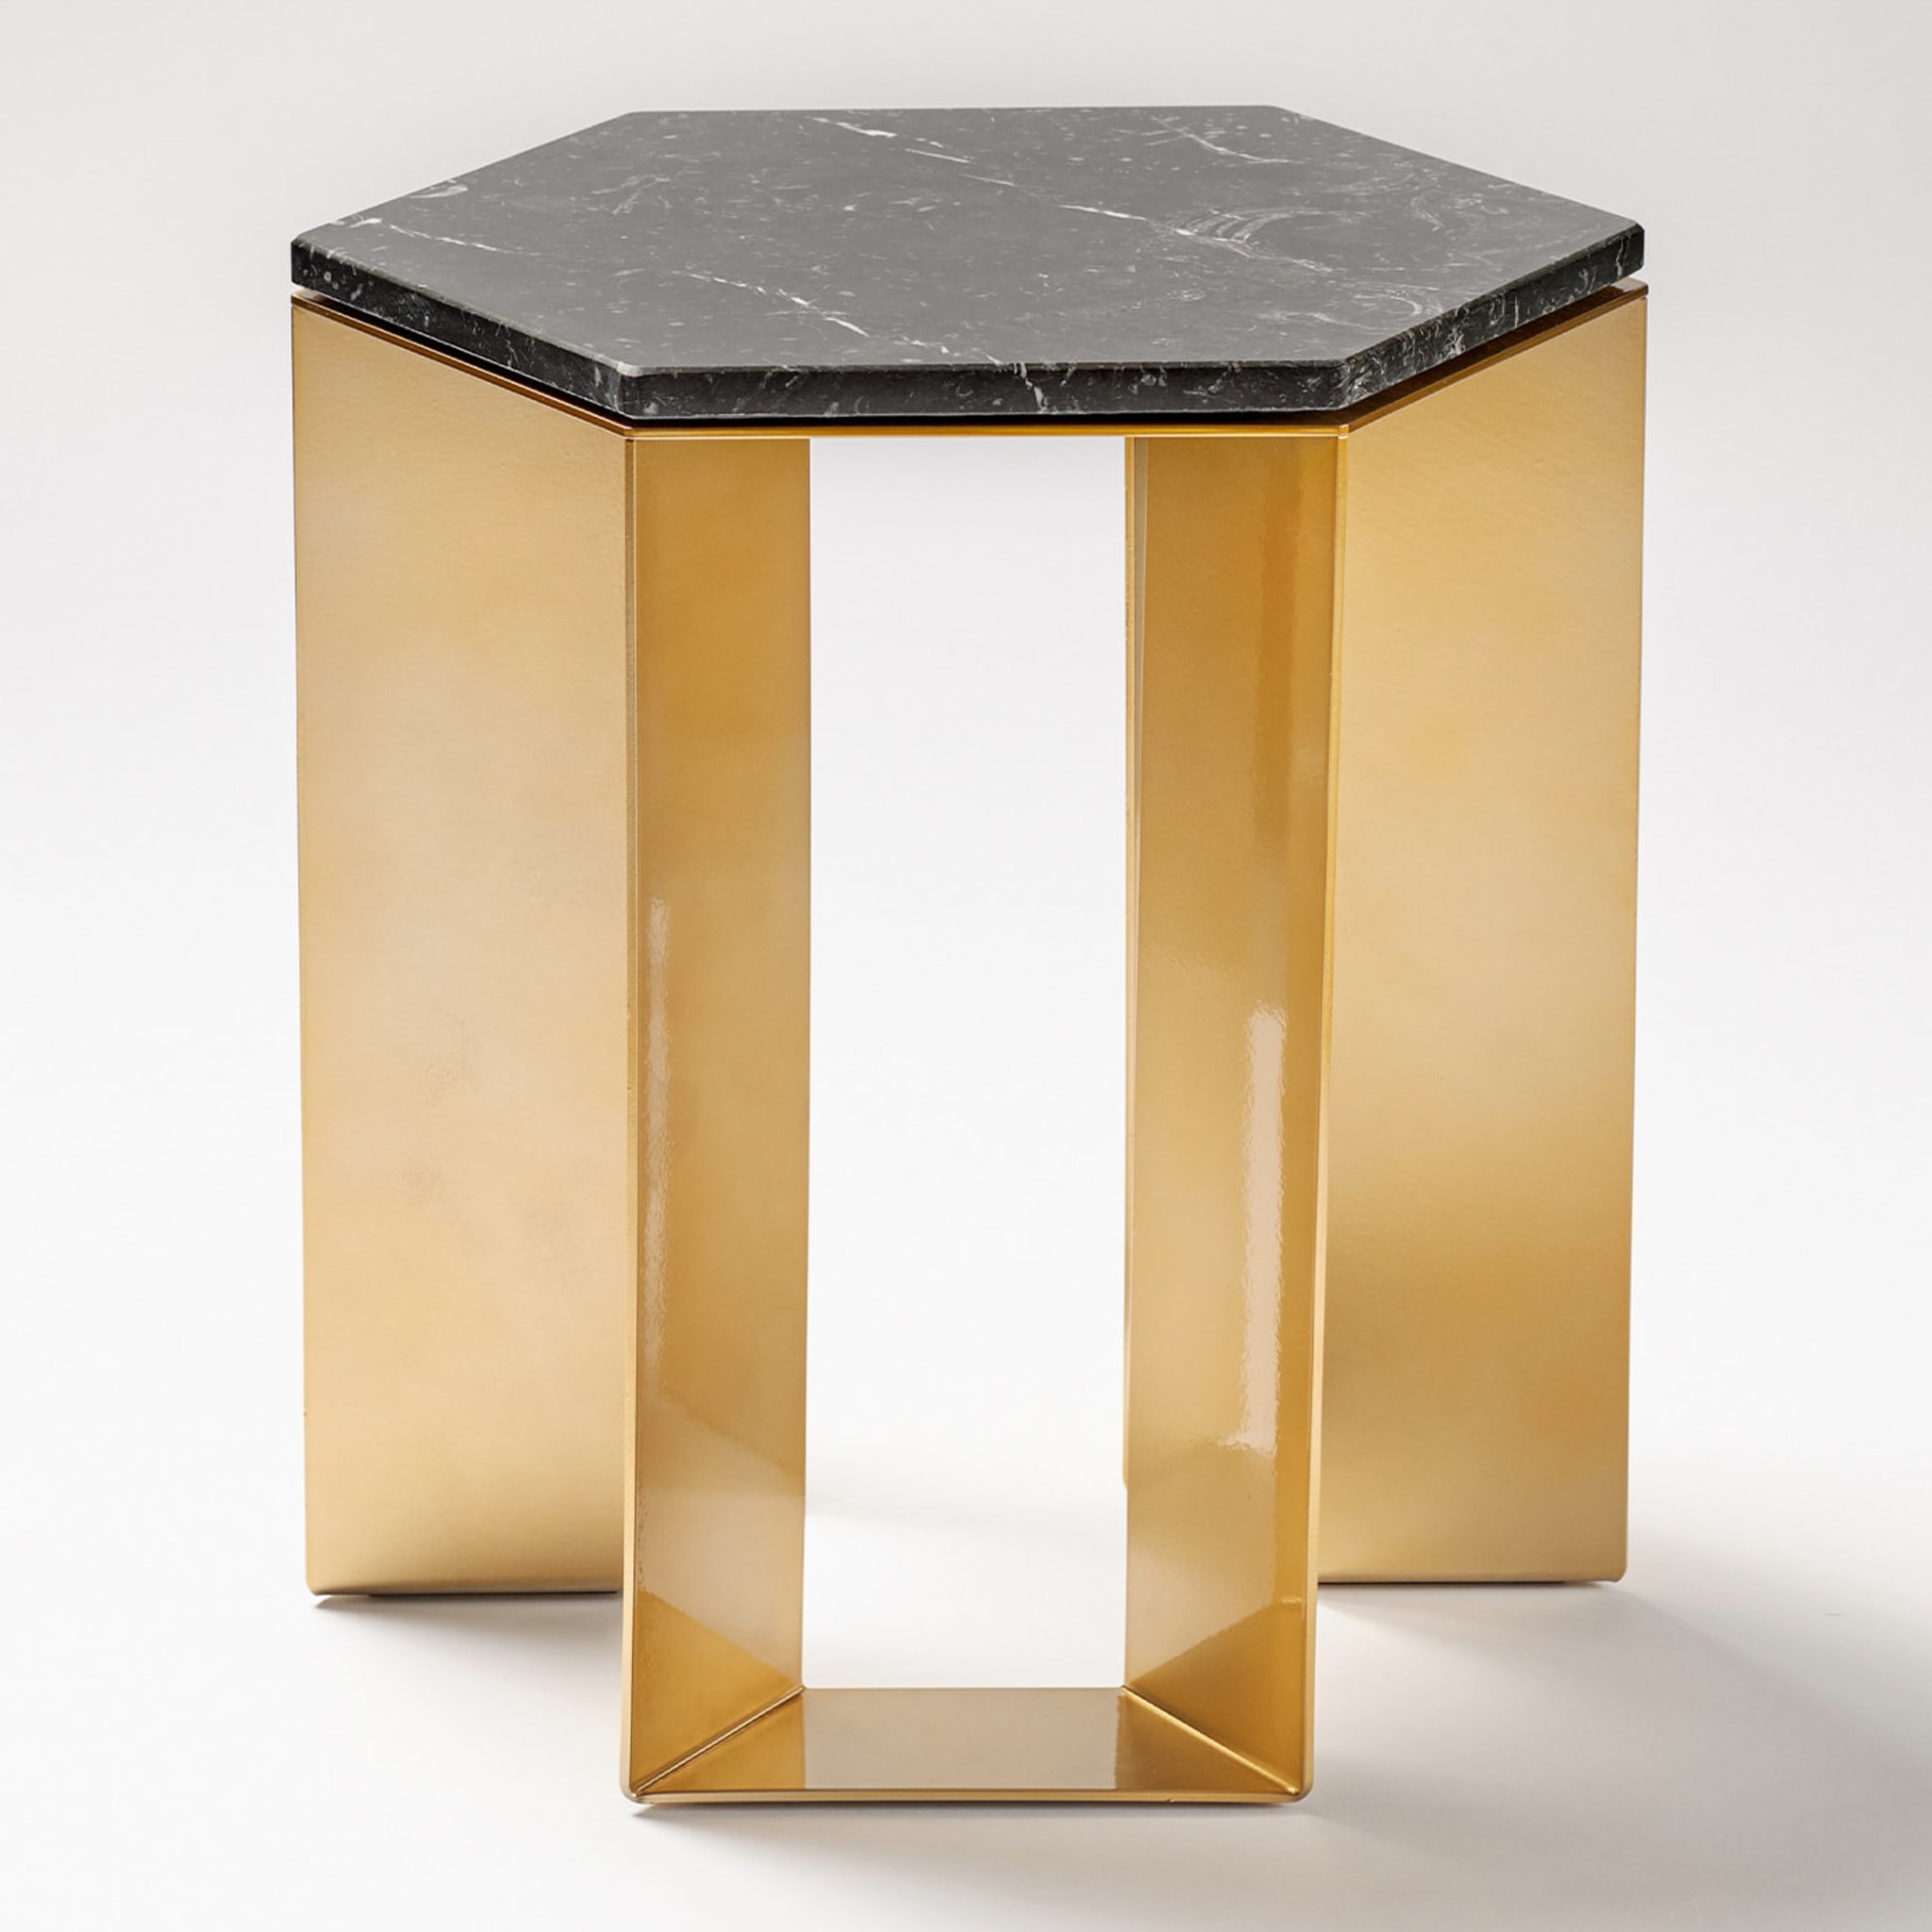 Alato Black and Gold Side Table by Antonio Saporito - Alternative view 2